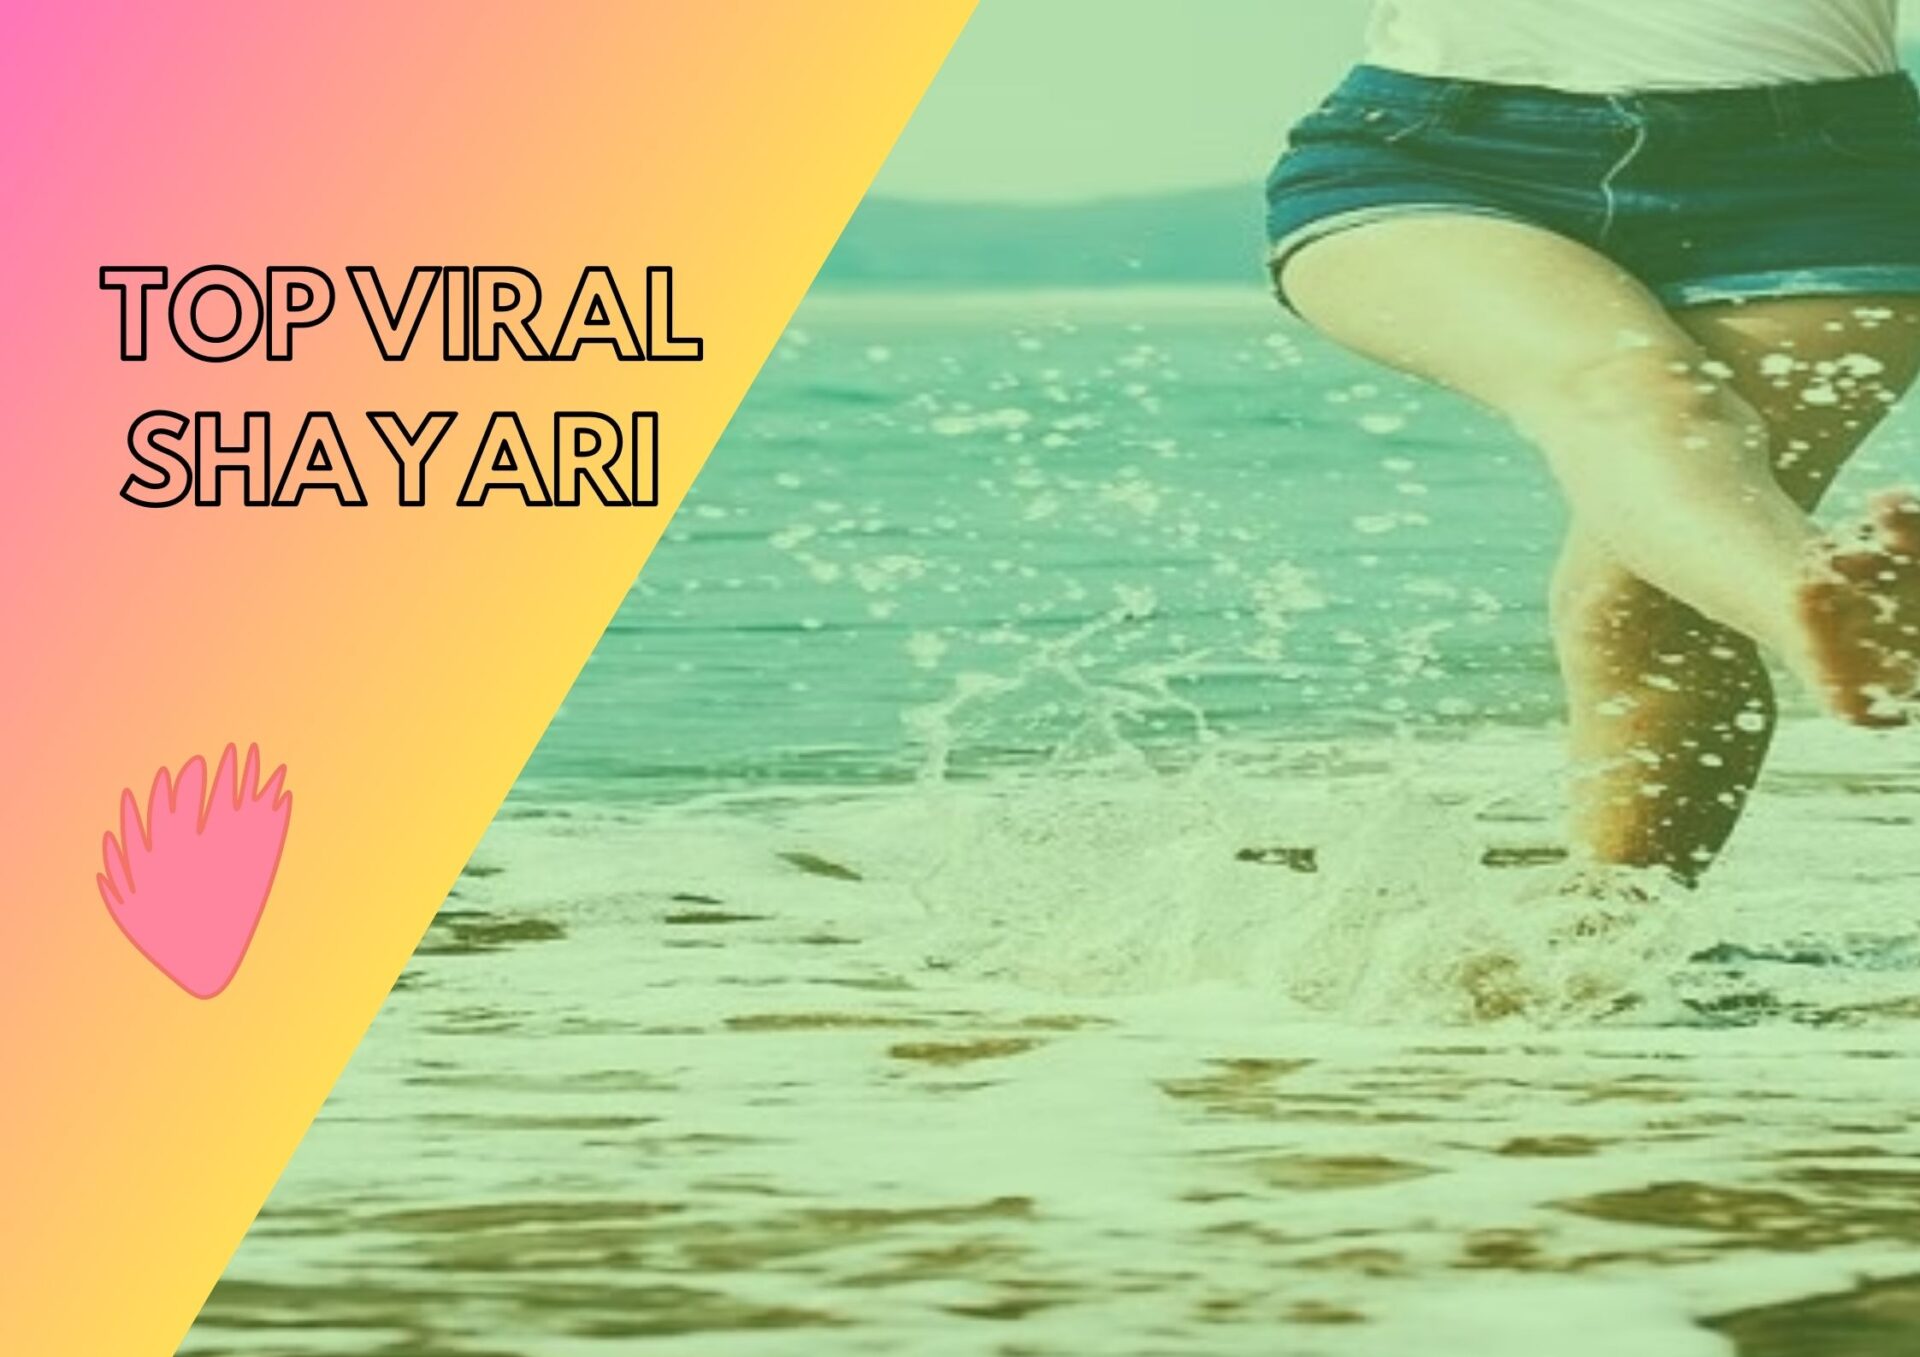 100+ Top Viral shayari in Hindi || वायरल शायरी हिंदी में